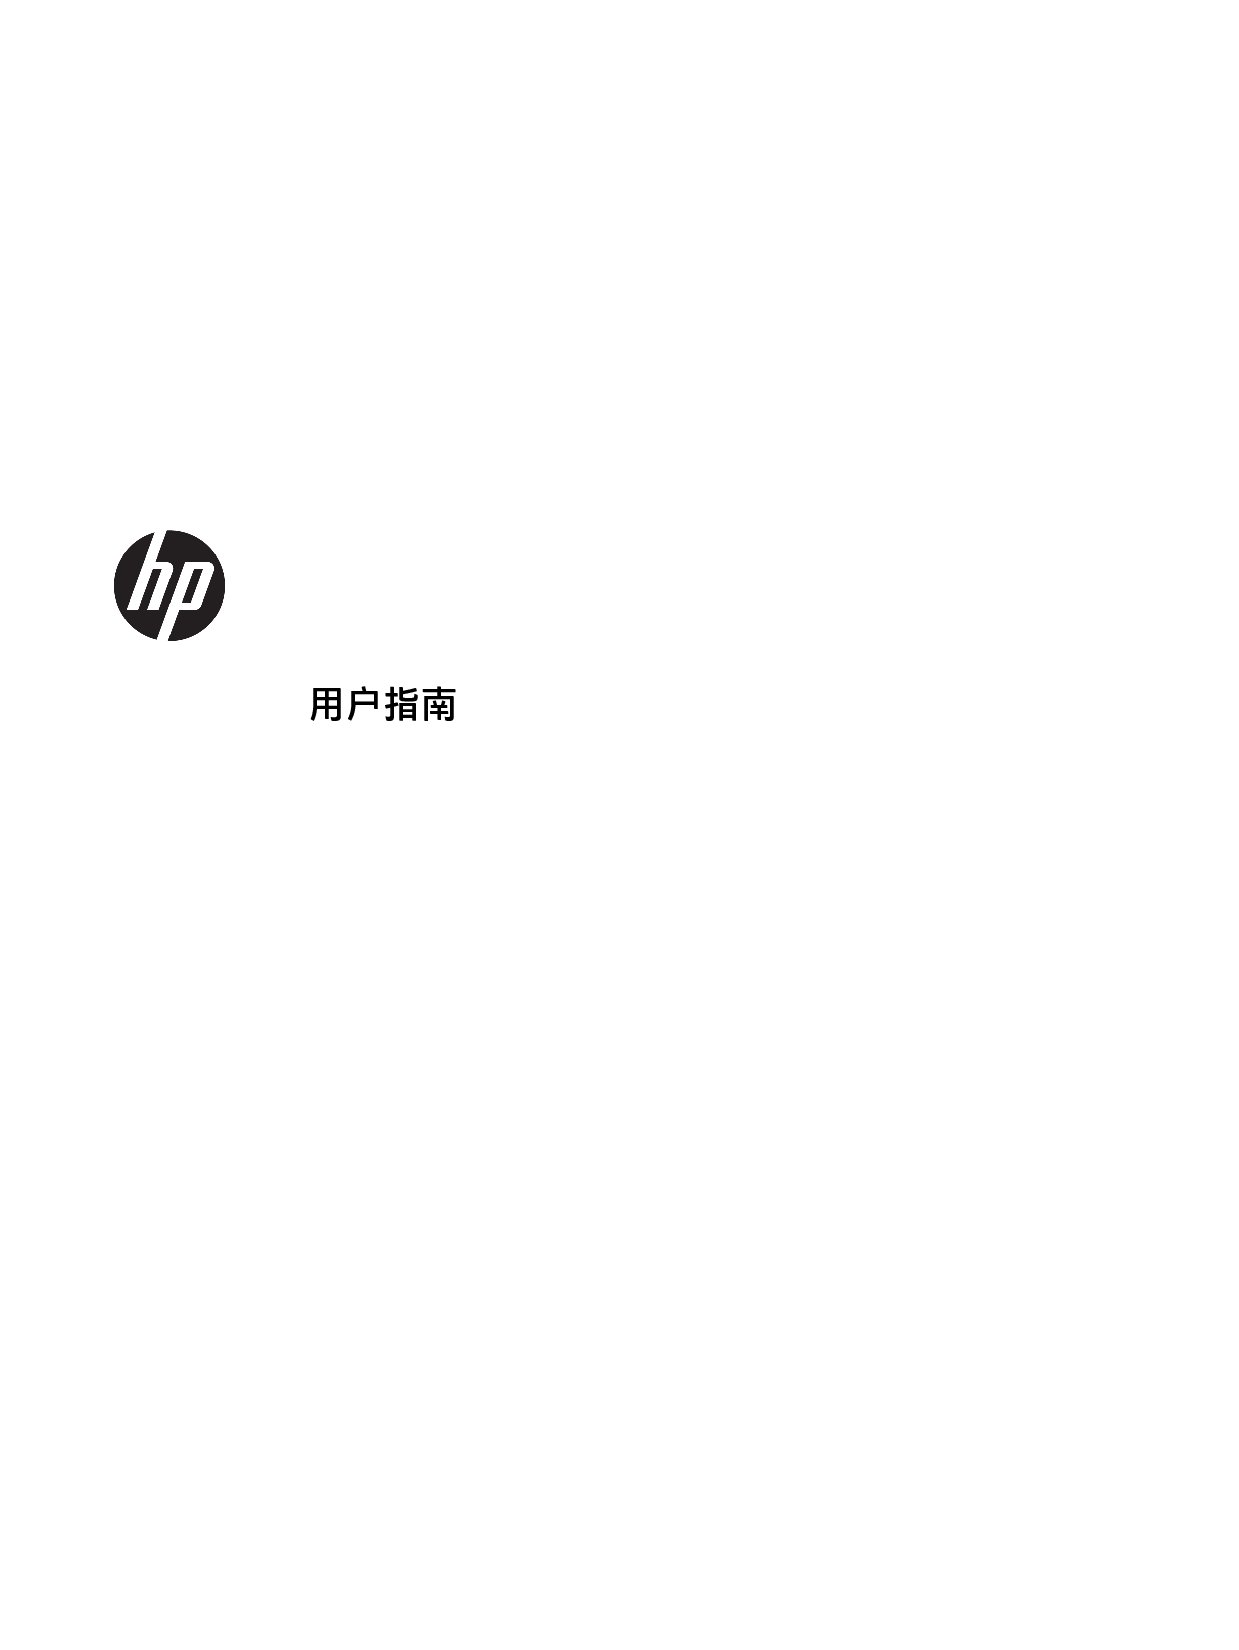 惠普 HP EliteBook x360 1030 G3 用户指南 封面